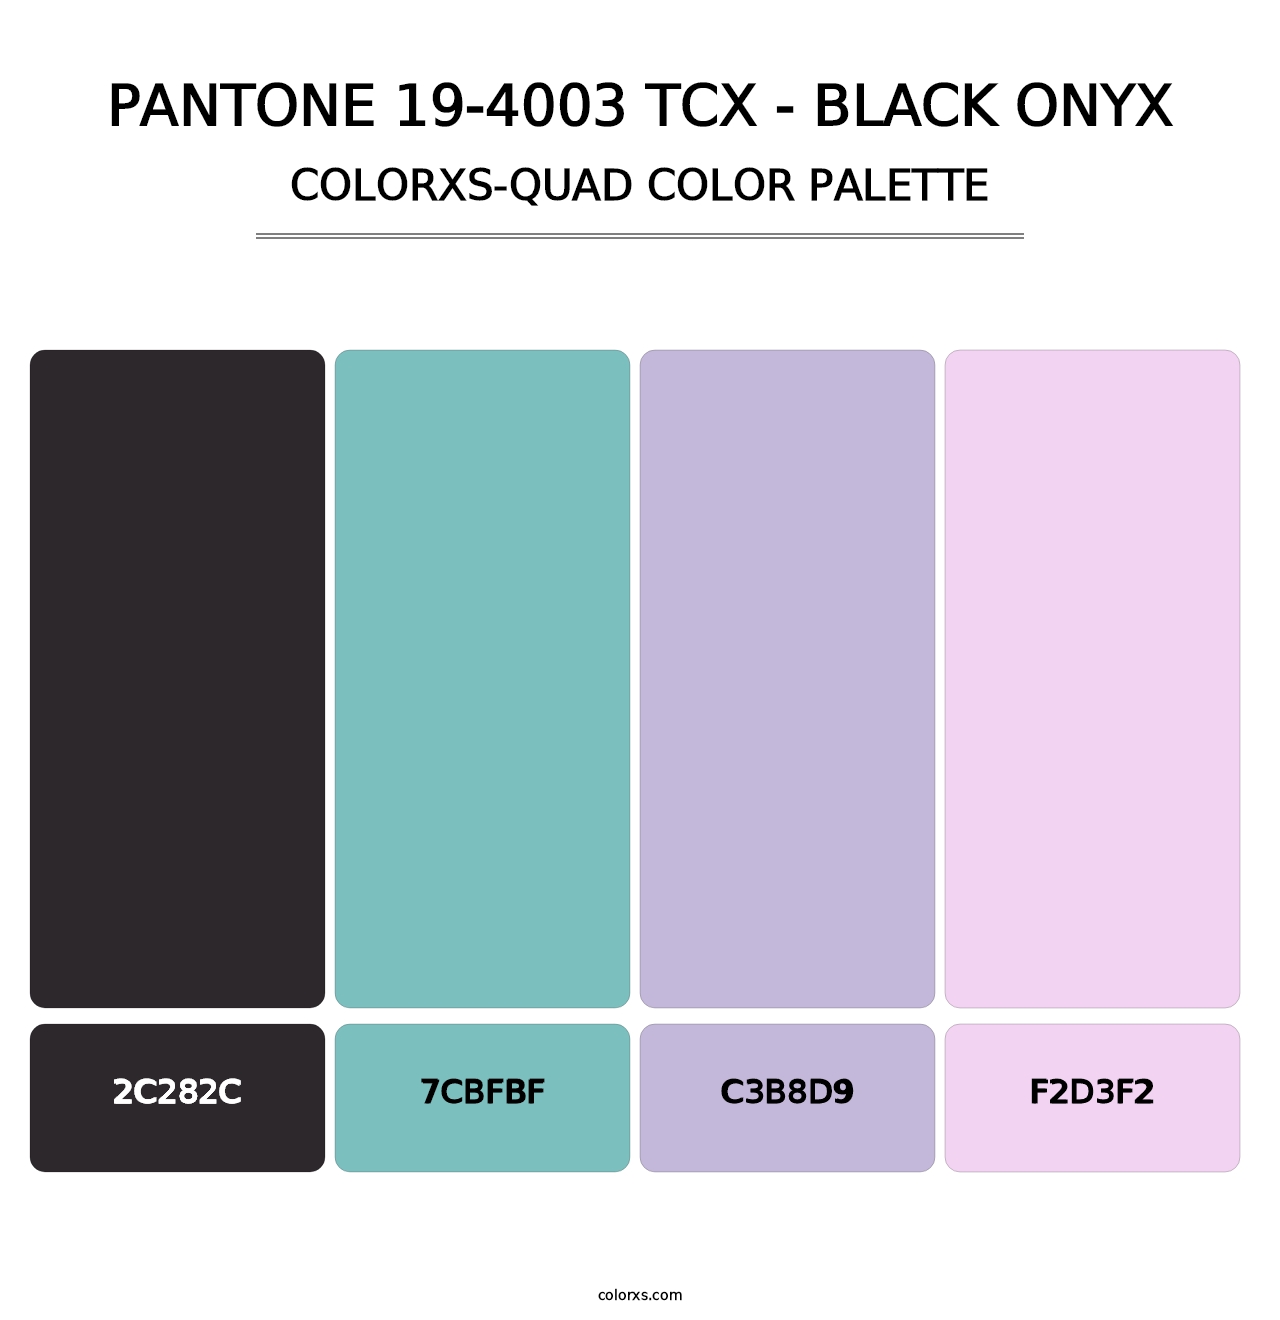 PANTONE 19-4003 TCX - Black Onyx - Colorxs Quad Palette